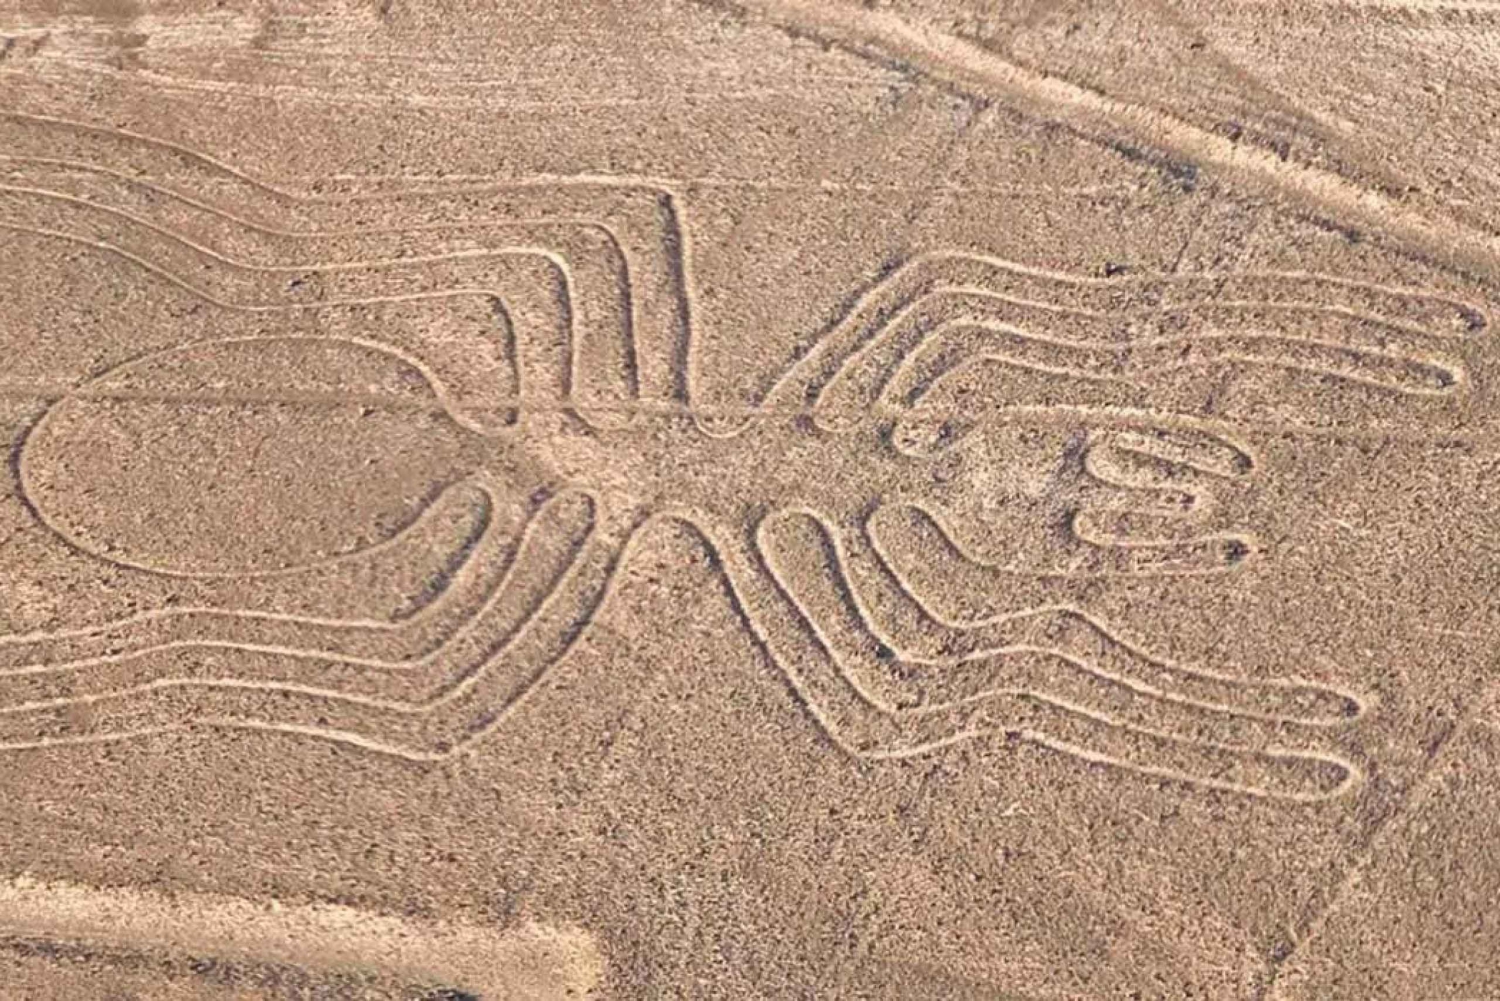 Passeio de avião pelas Linhas de Nazca